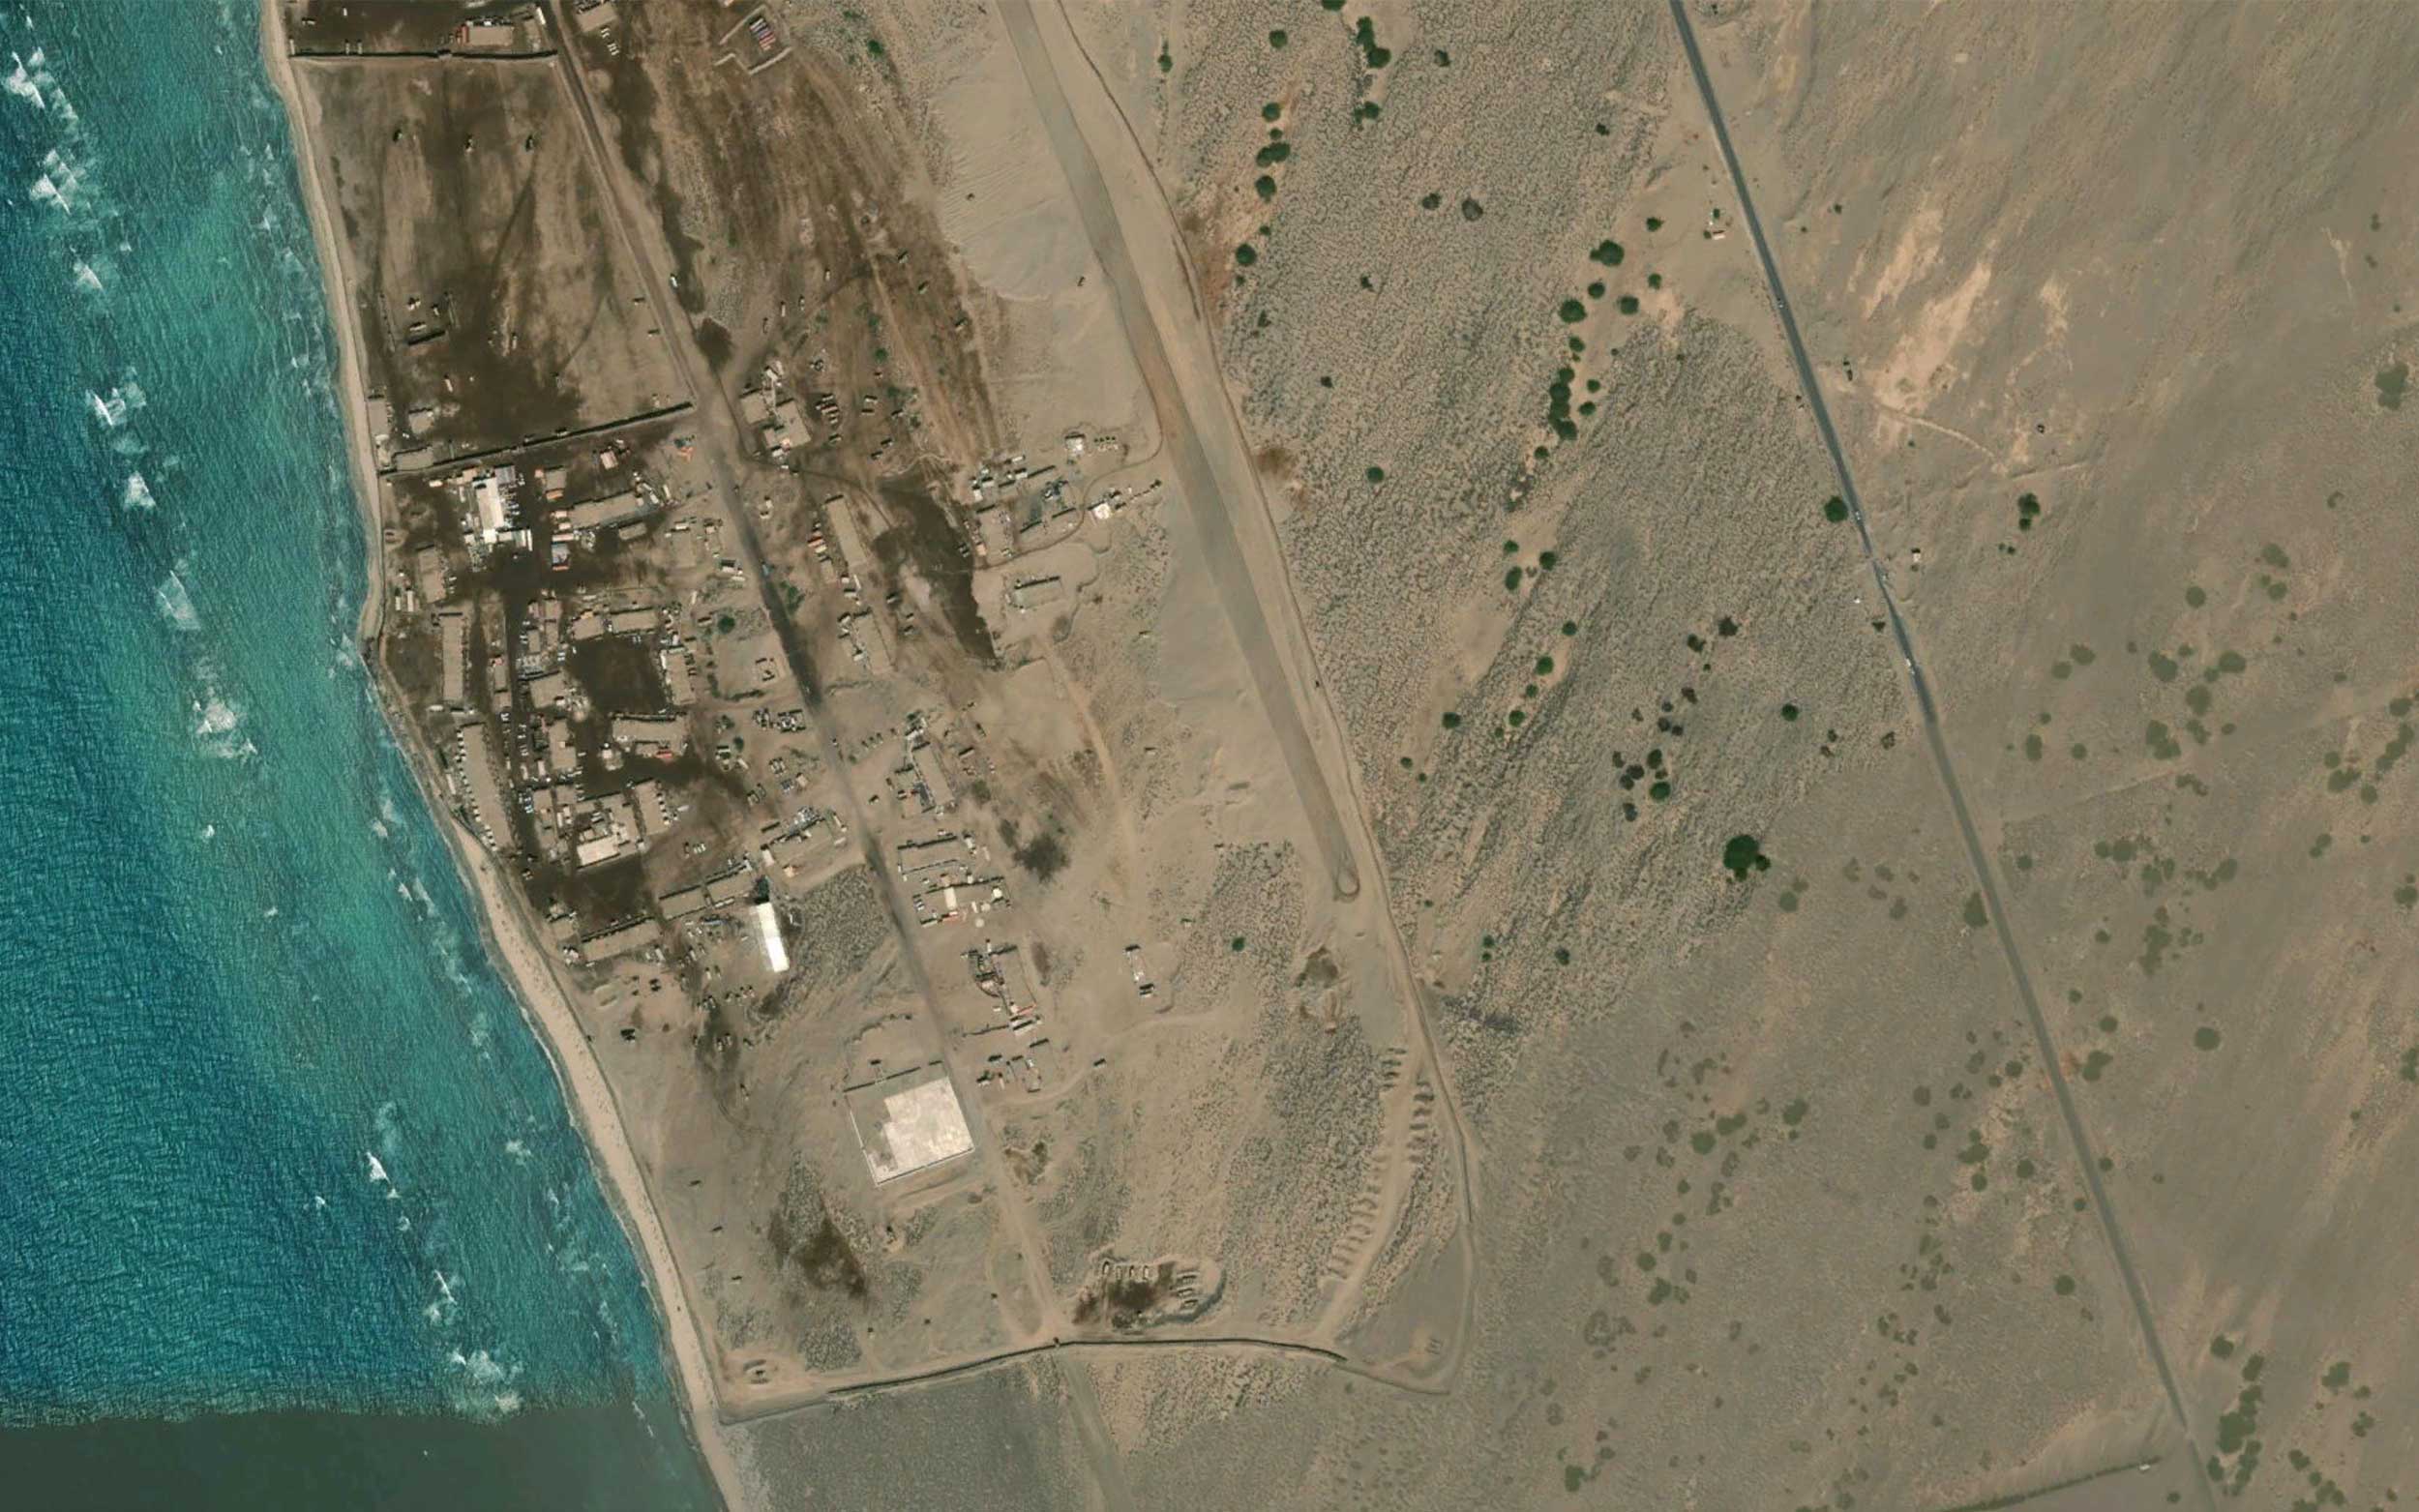 Patria-AMV-8x8-yemen-convoy-geolocation-satellite